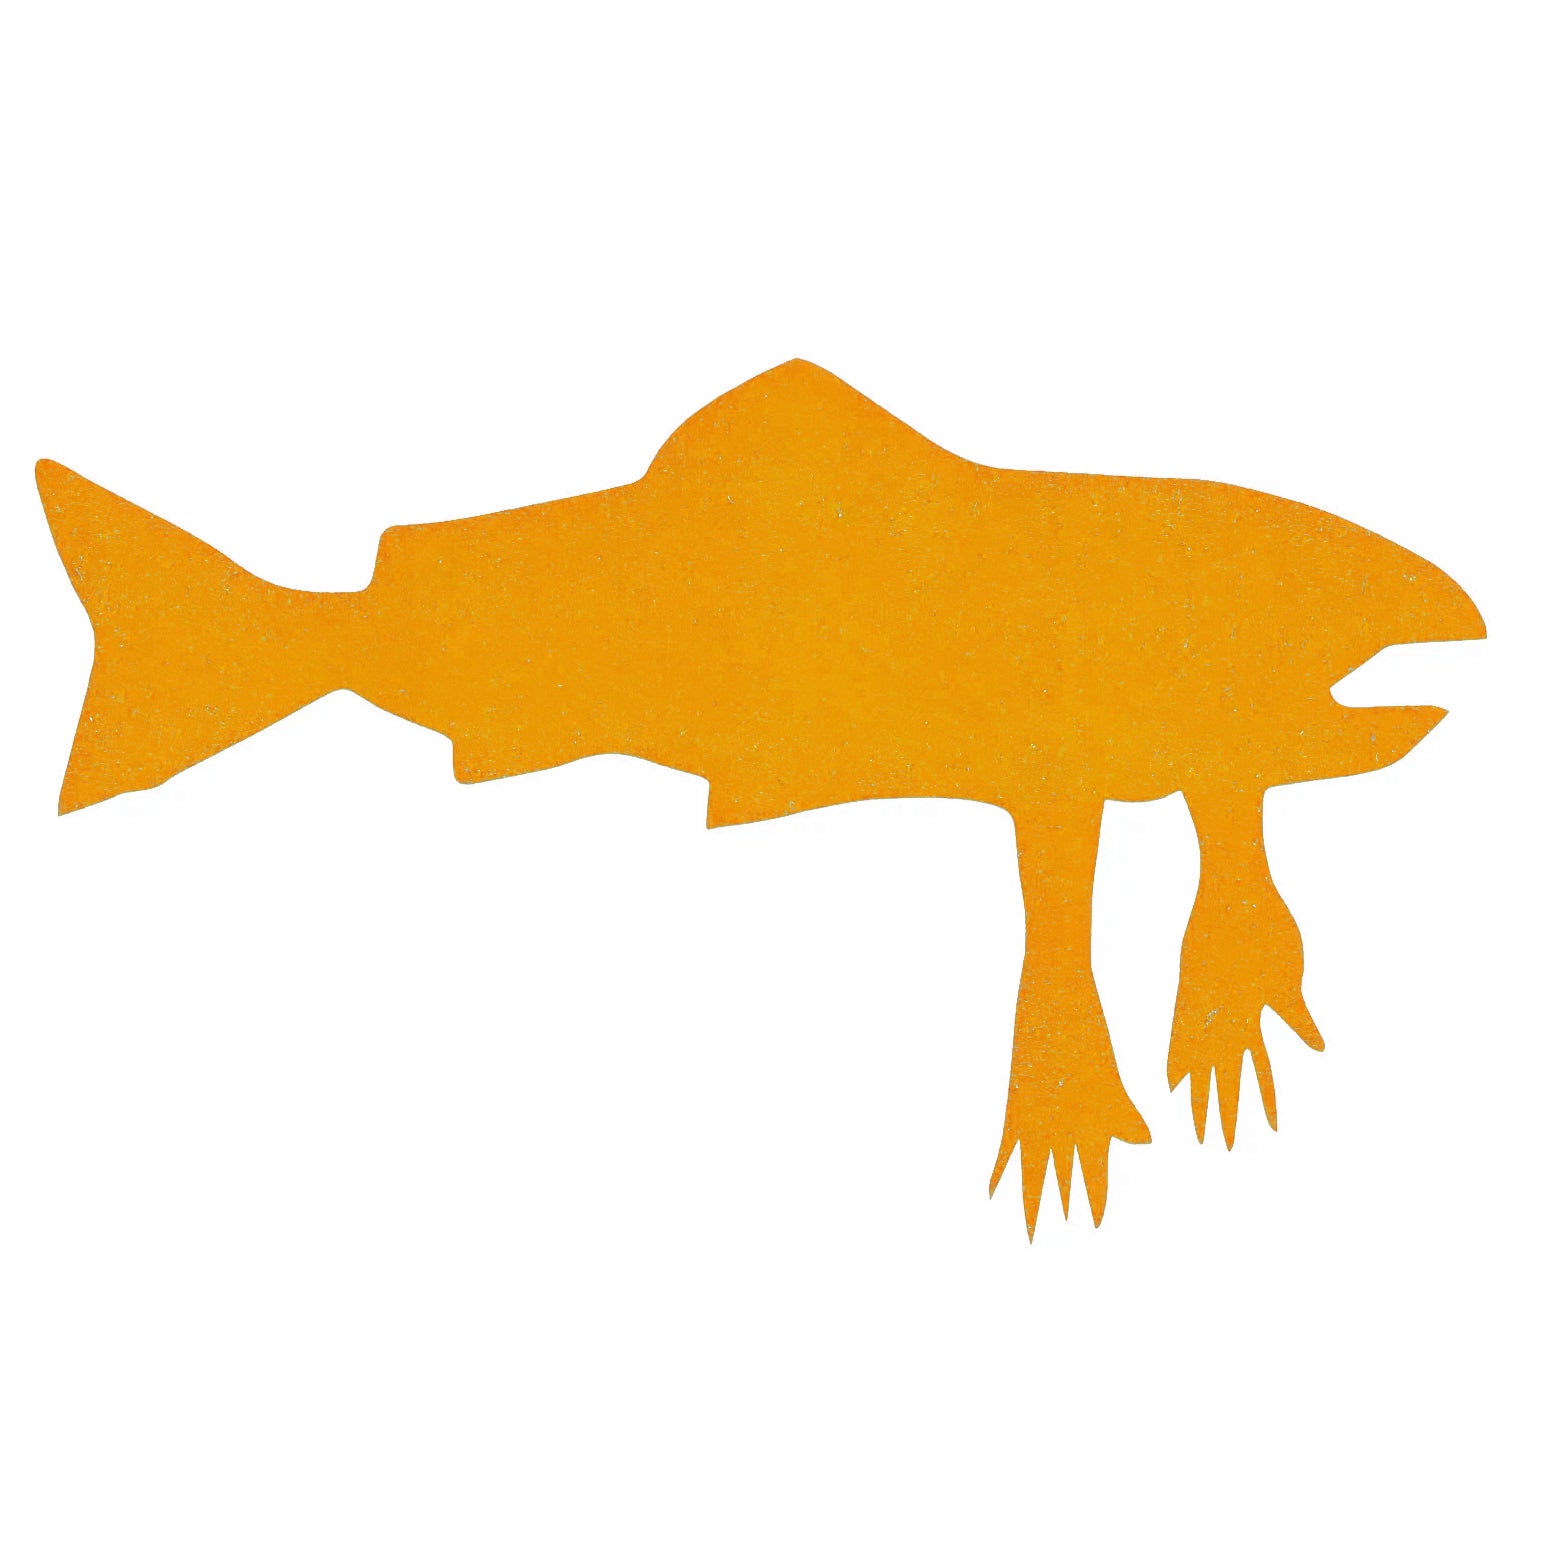 Salmon Arms Die-Cut Sticker - Orange